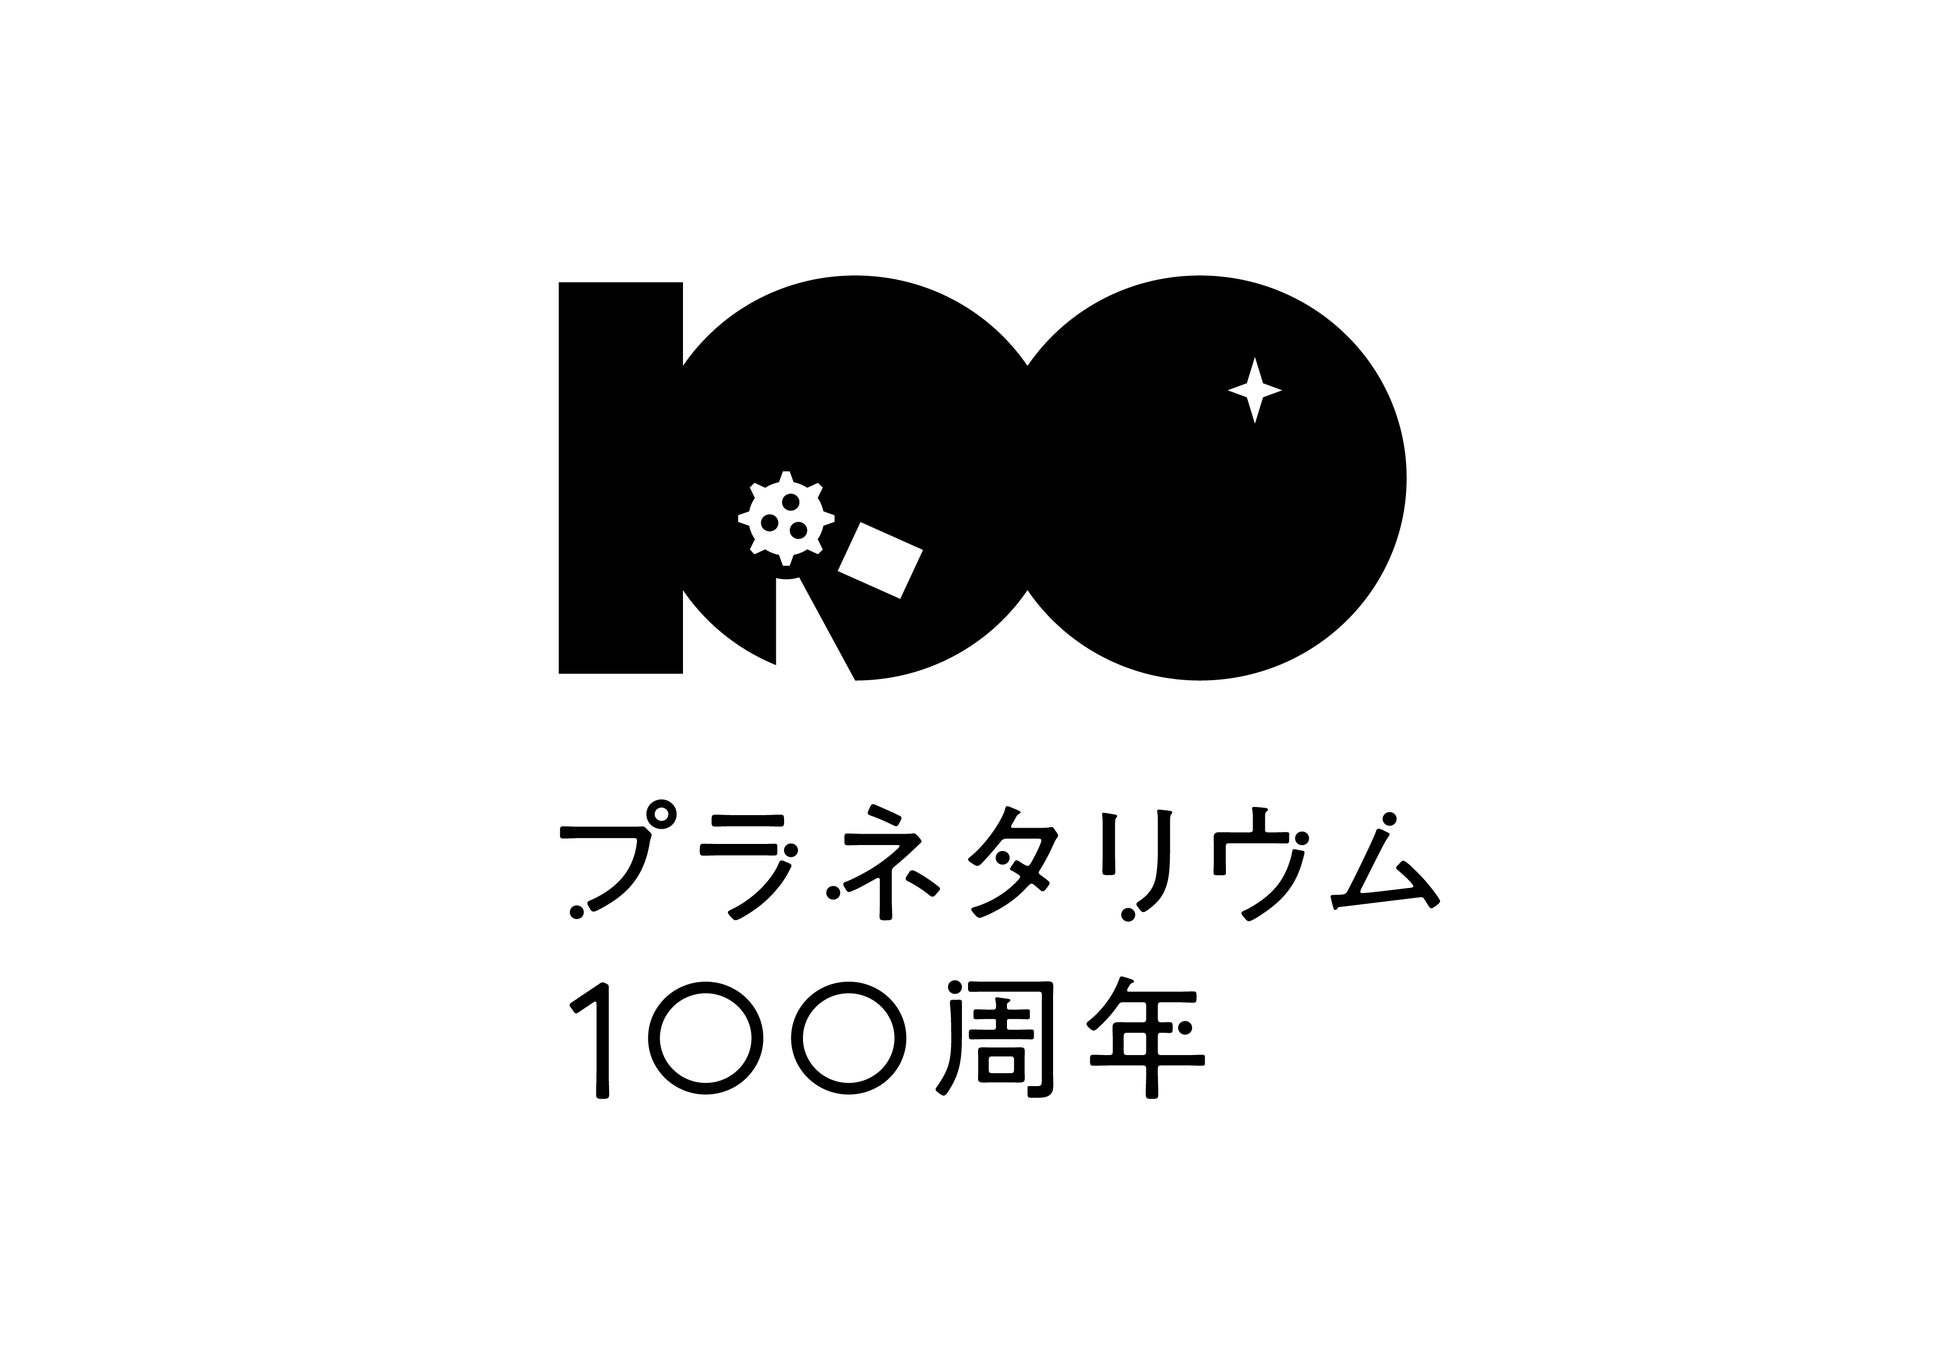 プラネタリウム100周年記念事業公式ロゴ